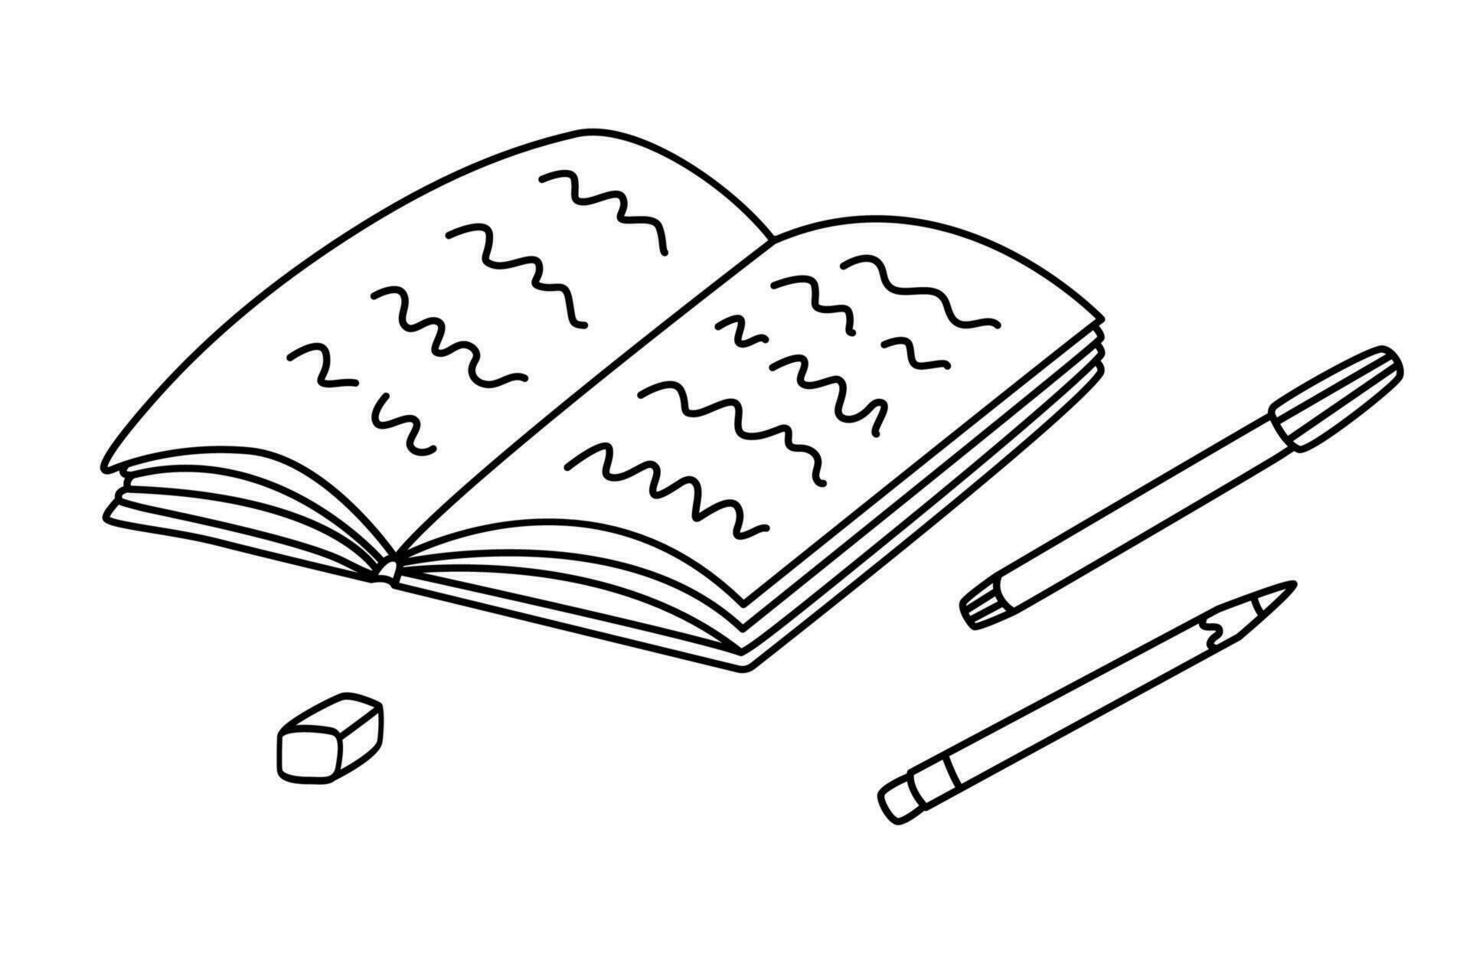 Schüler Heft oder Notizbuch mit Stift und Bleistift. Hand gezeichnet Vektor Gekritzel Illustration, schwarz Umriss.